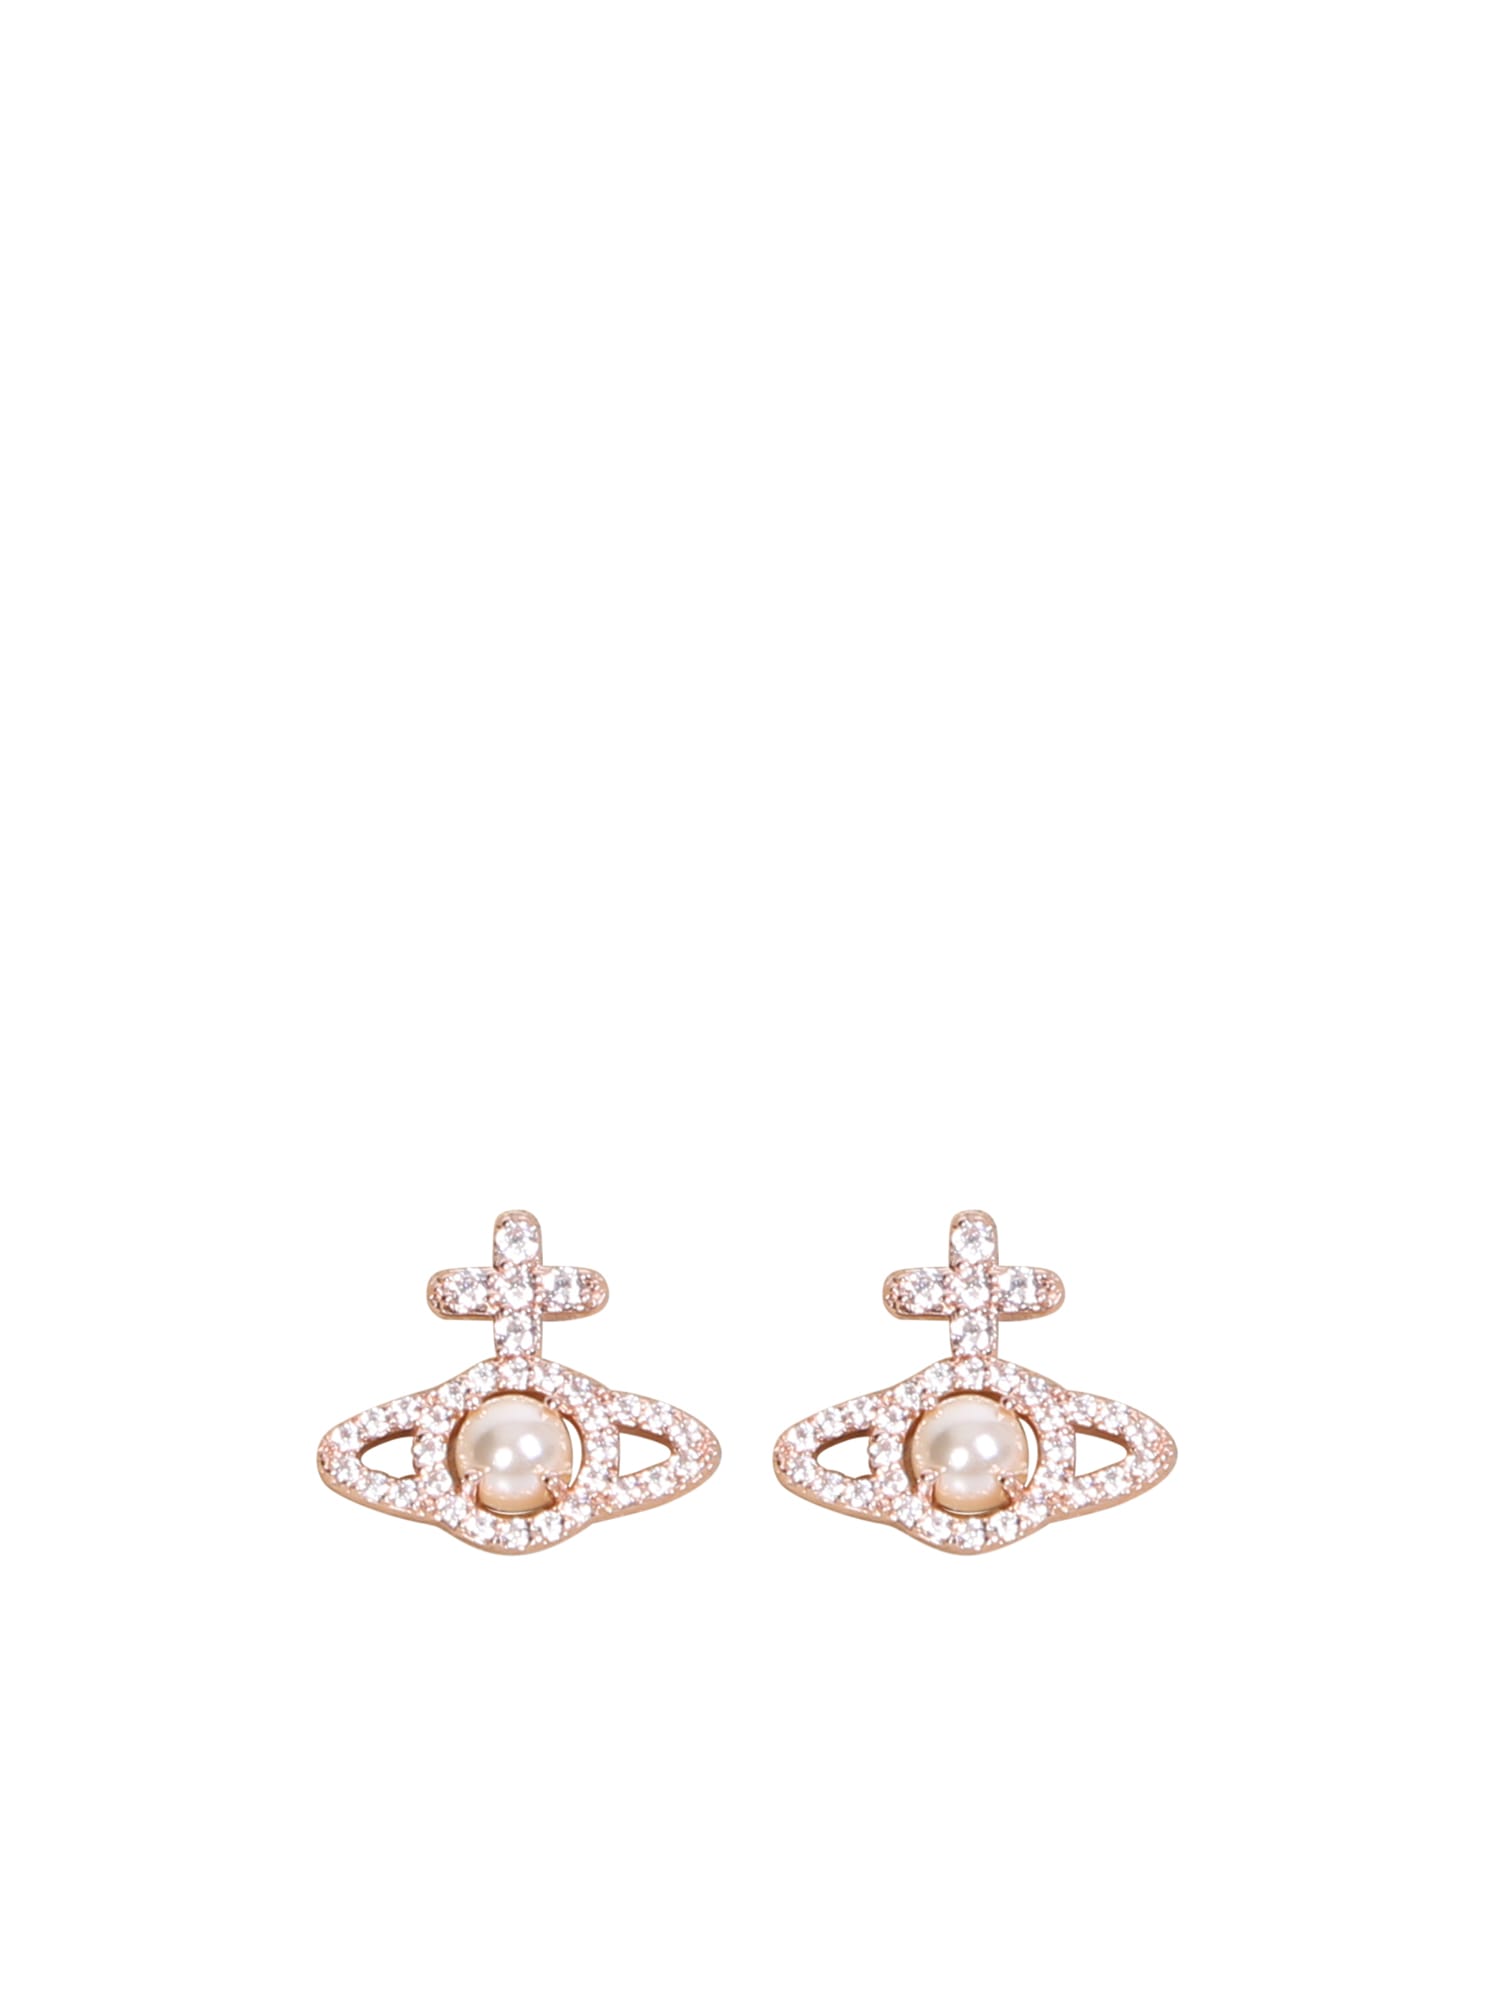 Vivienne Westwood Rose Gold Olympia Earrings